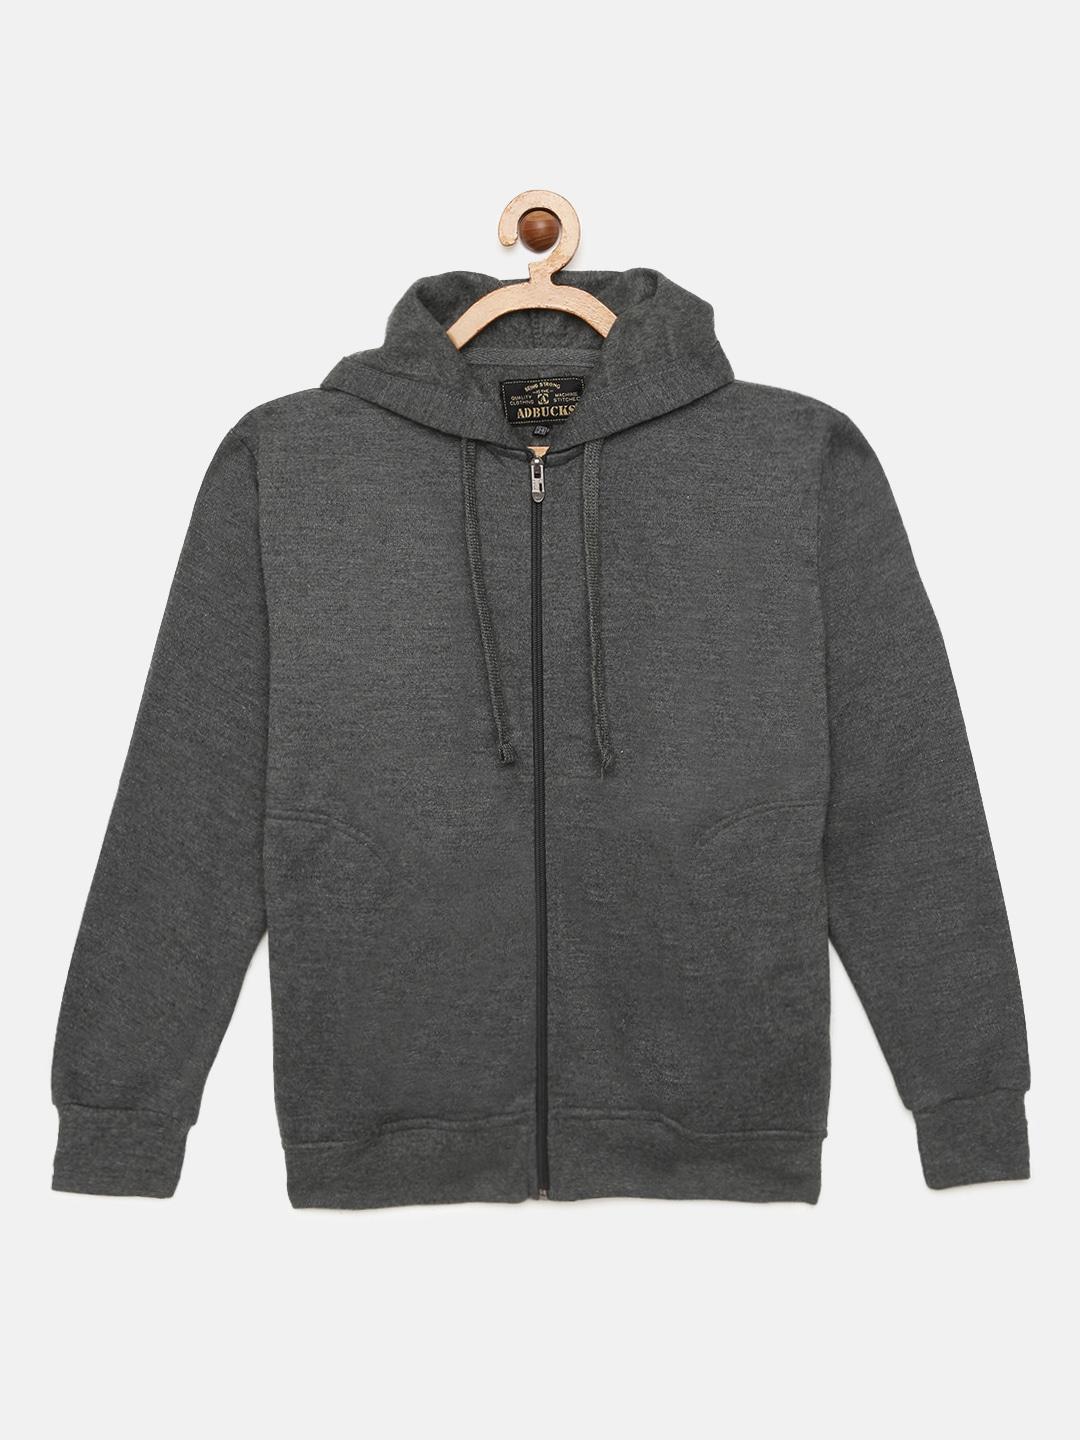 adbucks-boys-grey-solid-hooded-sweatshirt